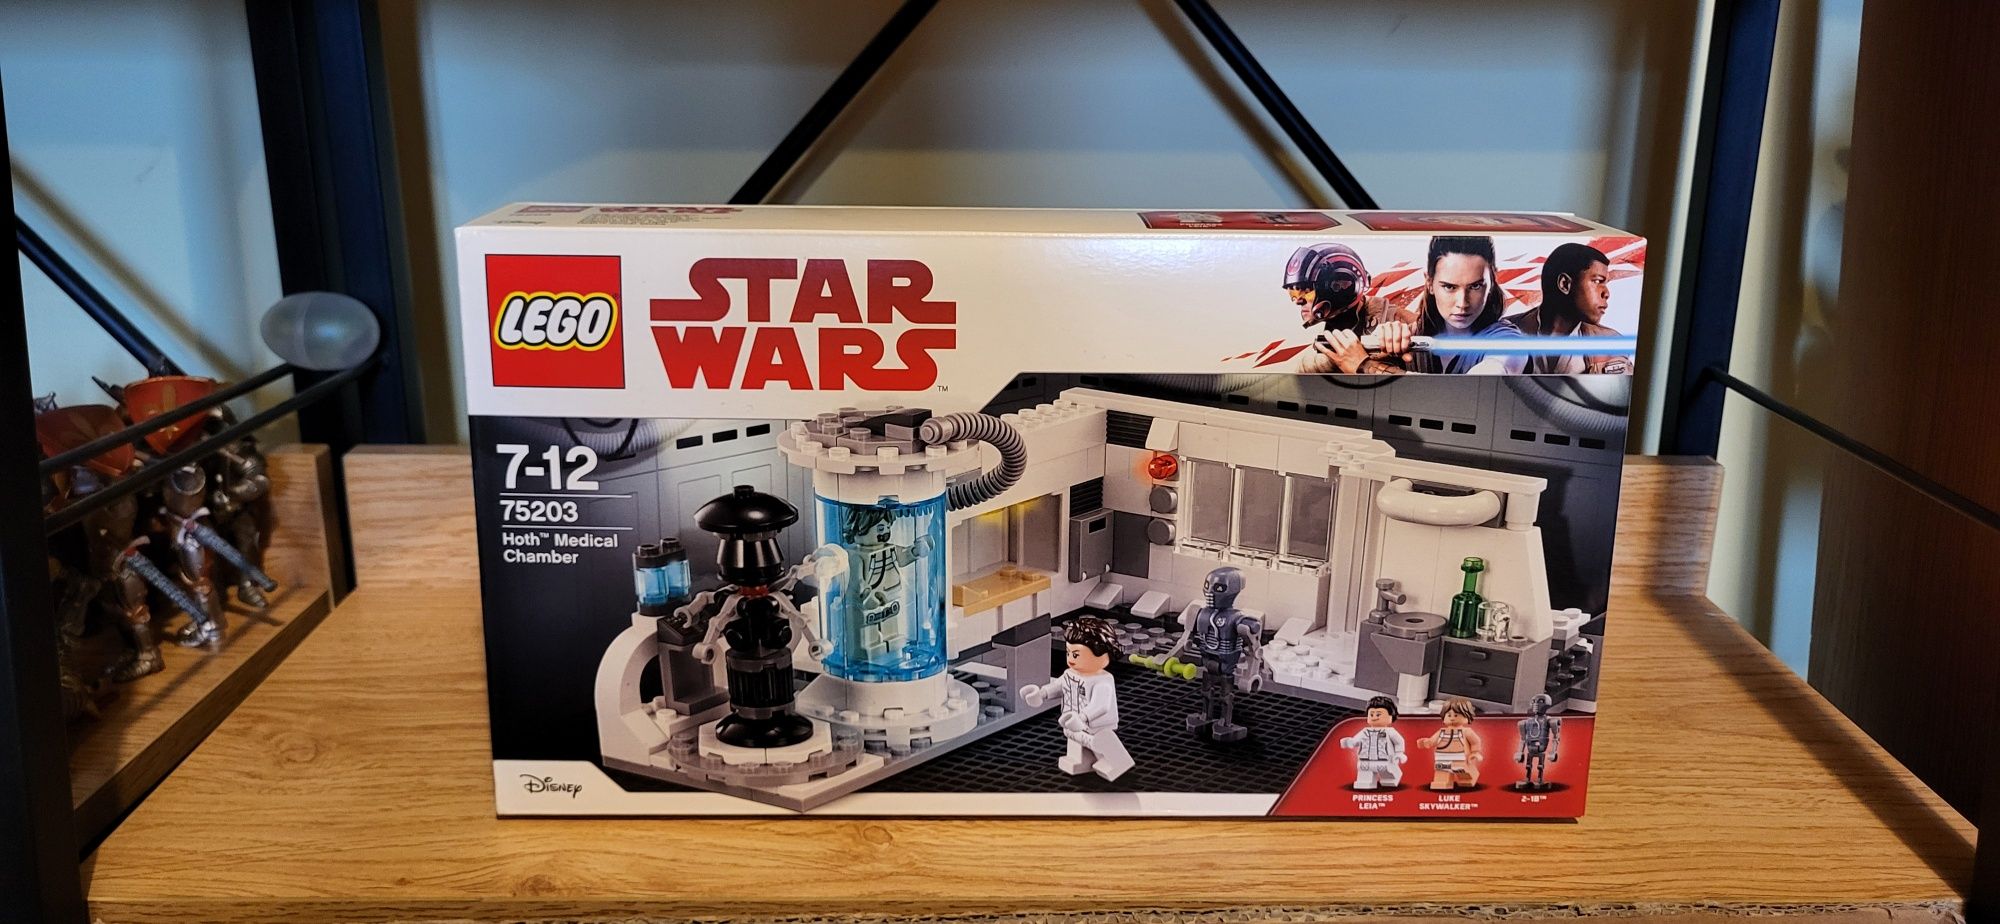 Lego Star Wars 75203 Komora Medyczna na Hoth nowy zestaw